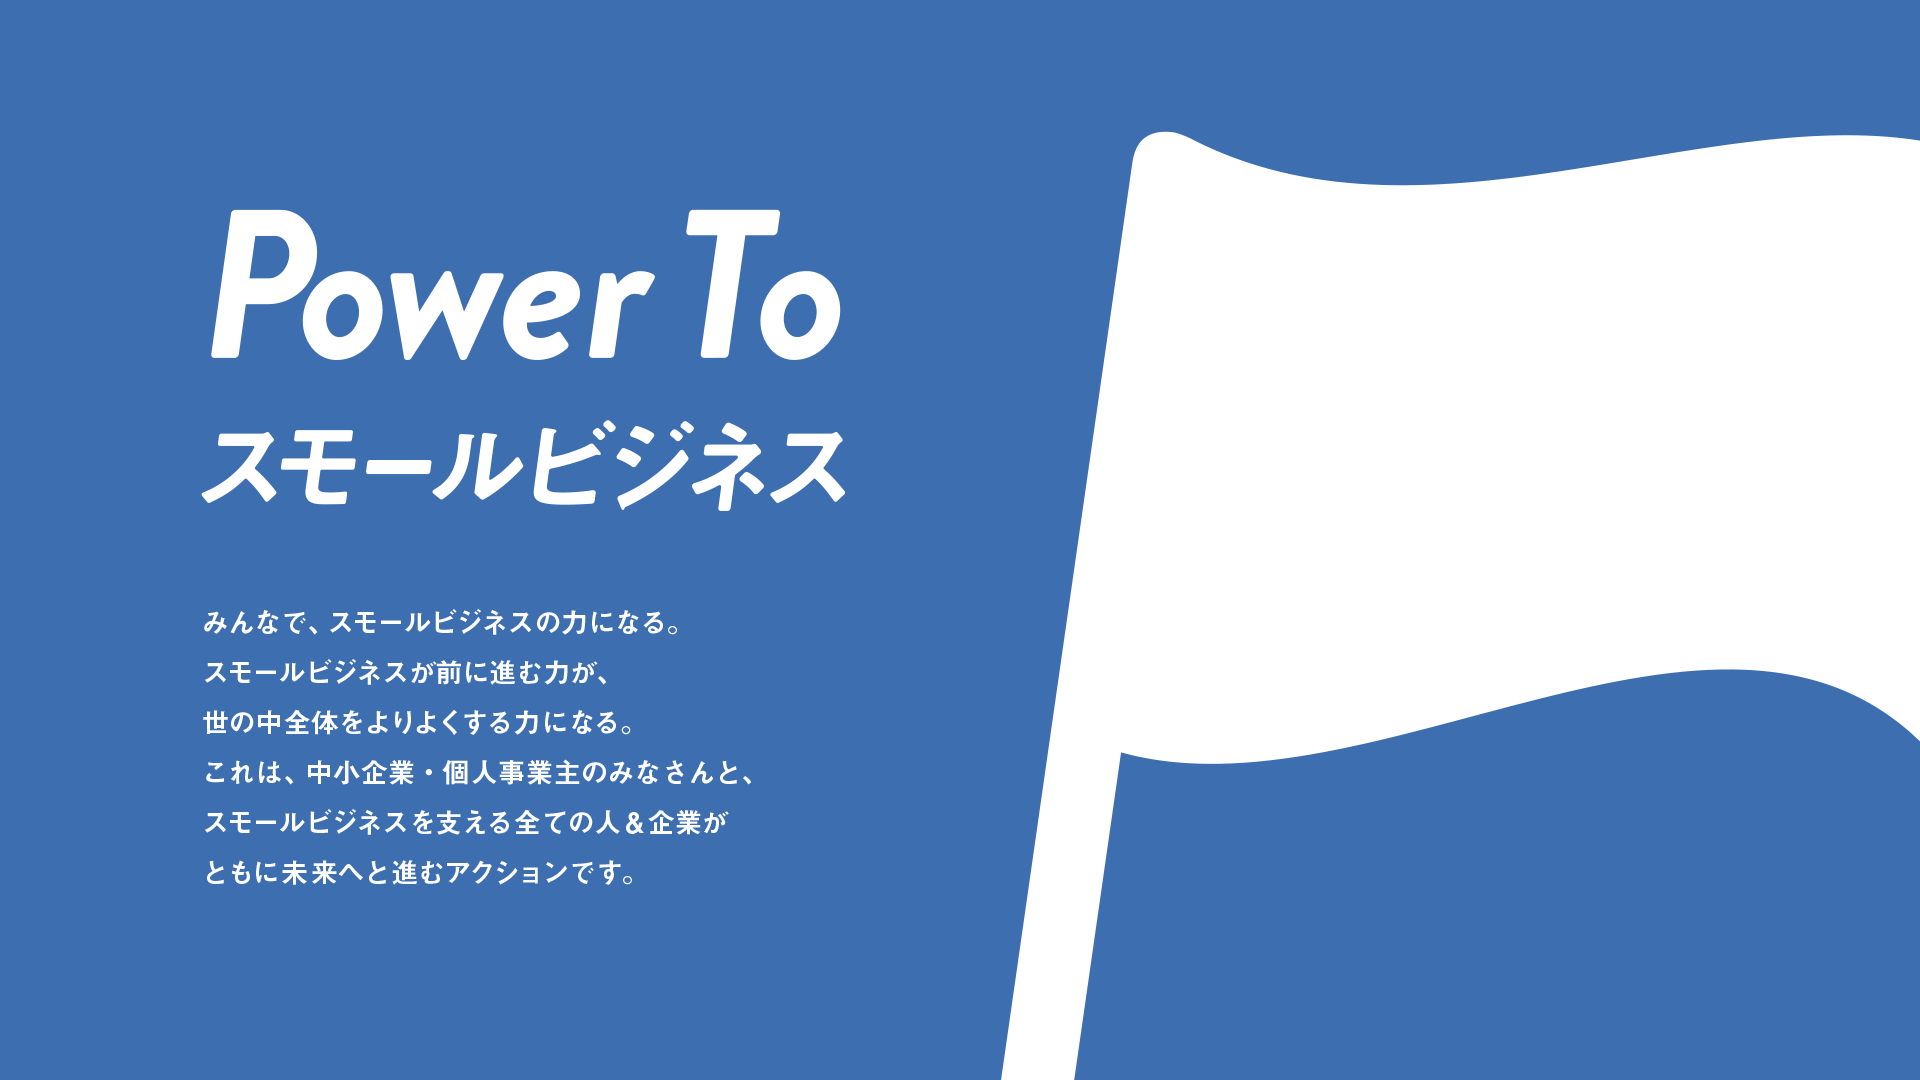 power to スモールビジネス